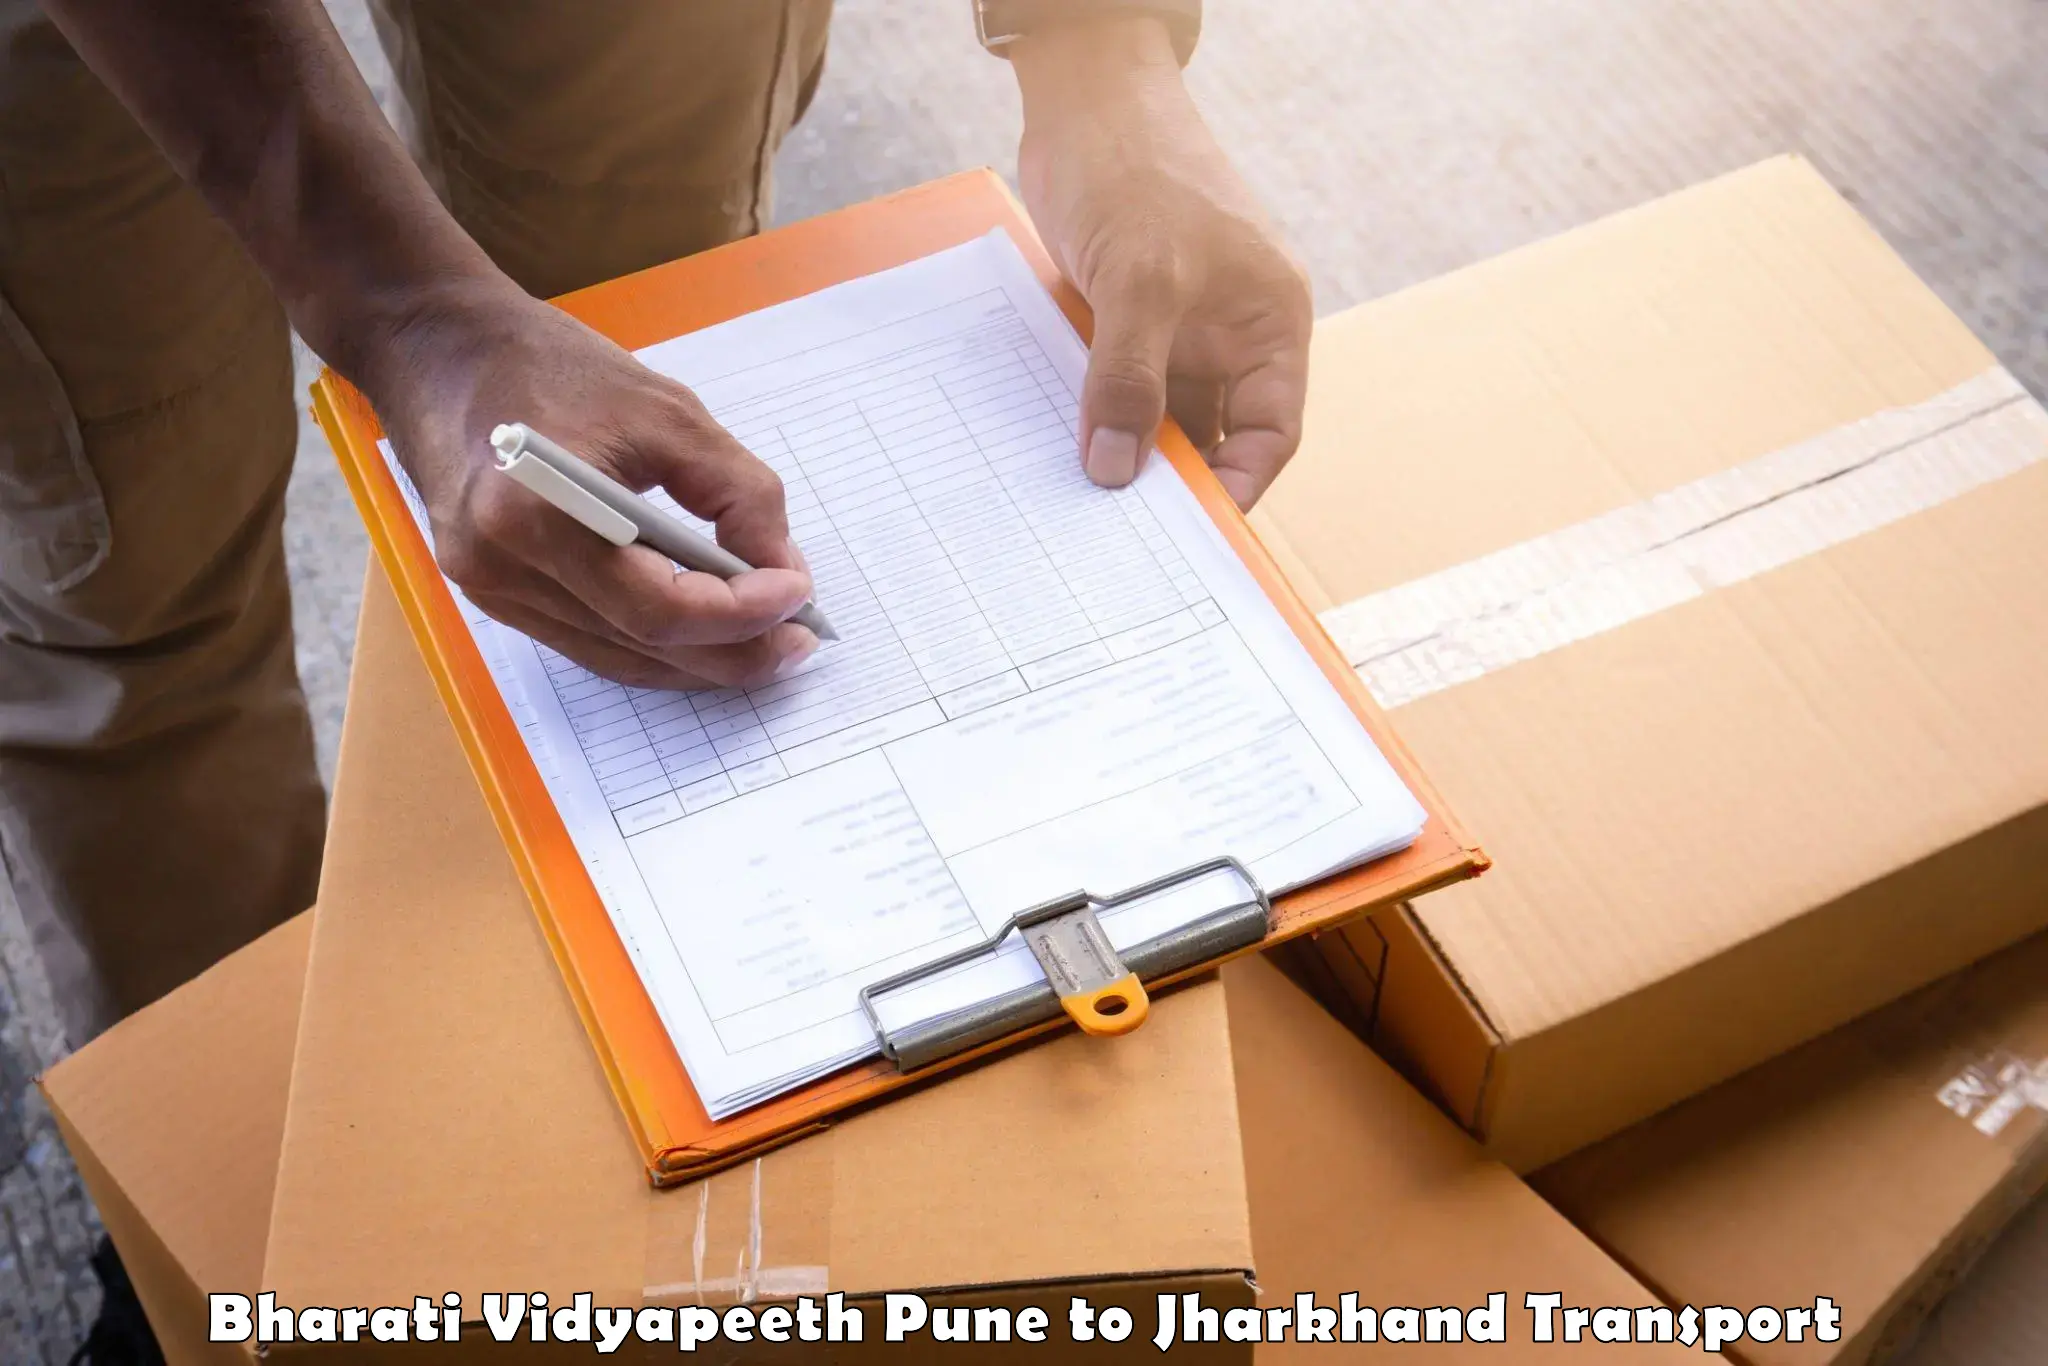 Lorry transport service Bharati Vidyapeeth Pune to Kolebira